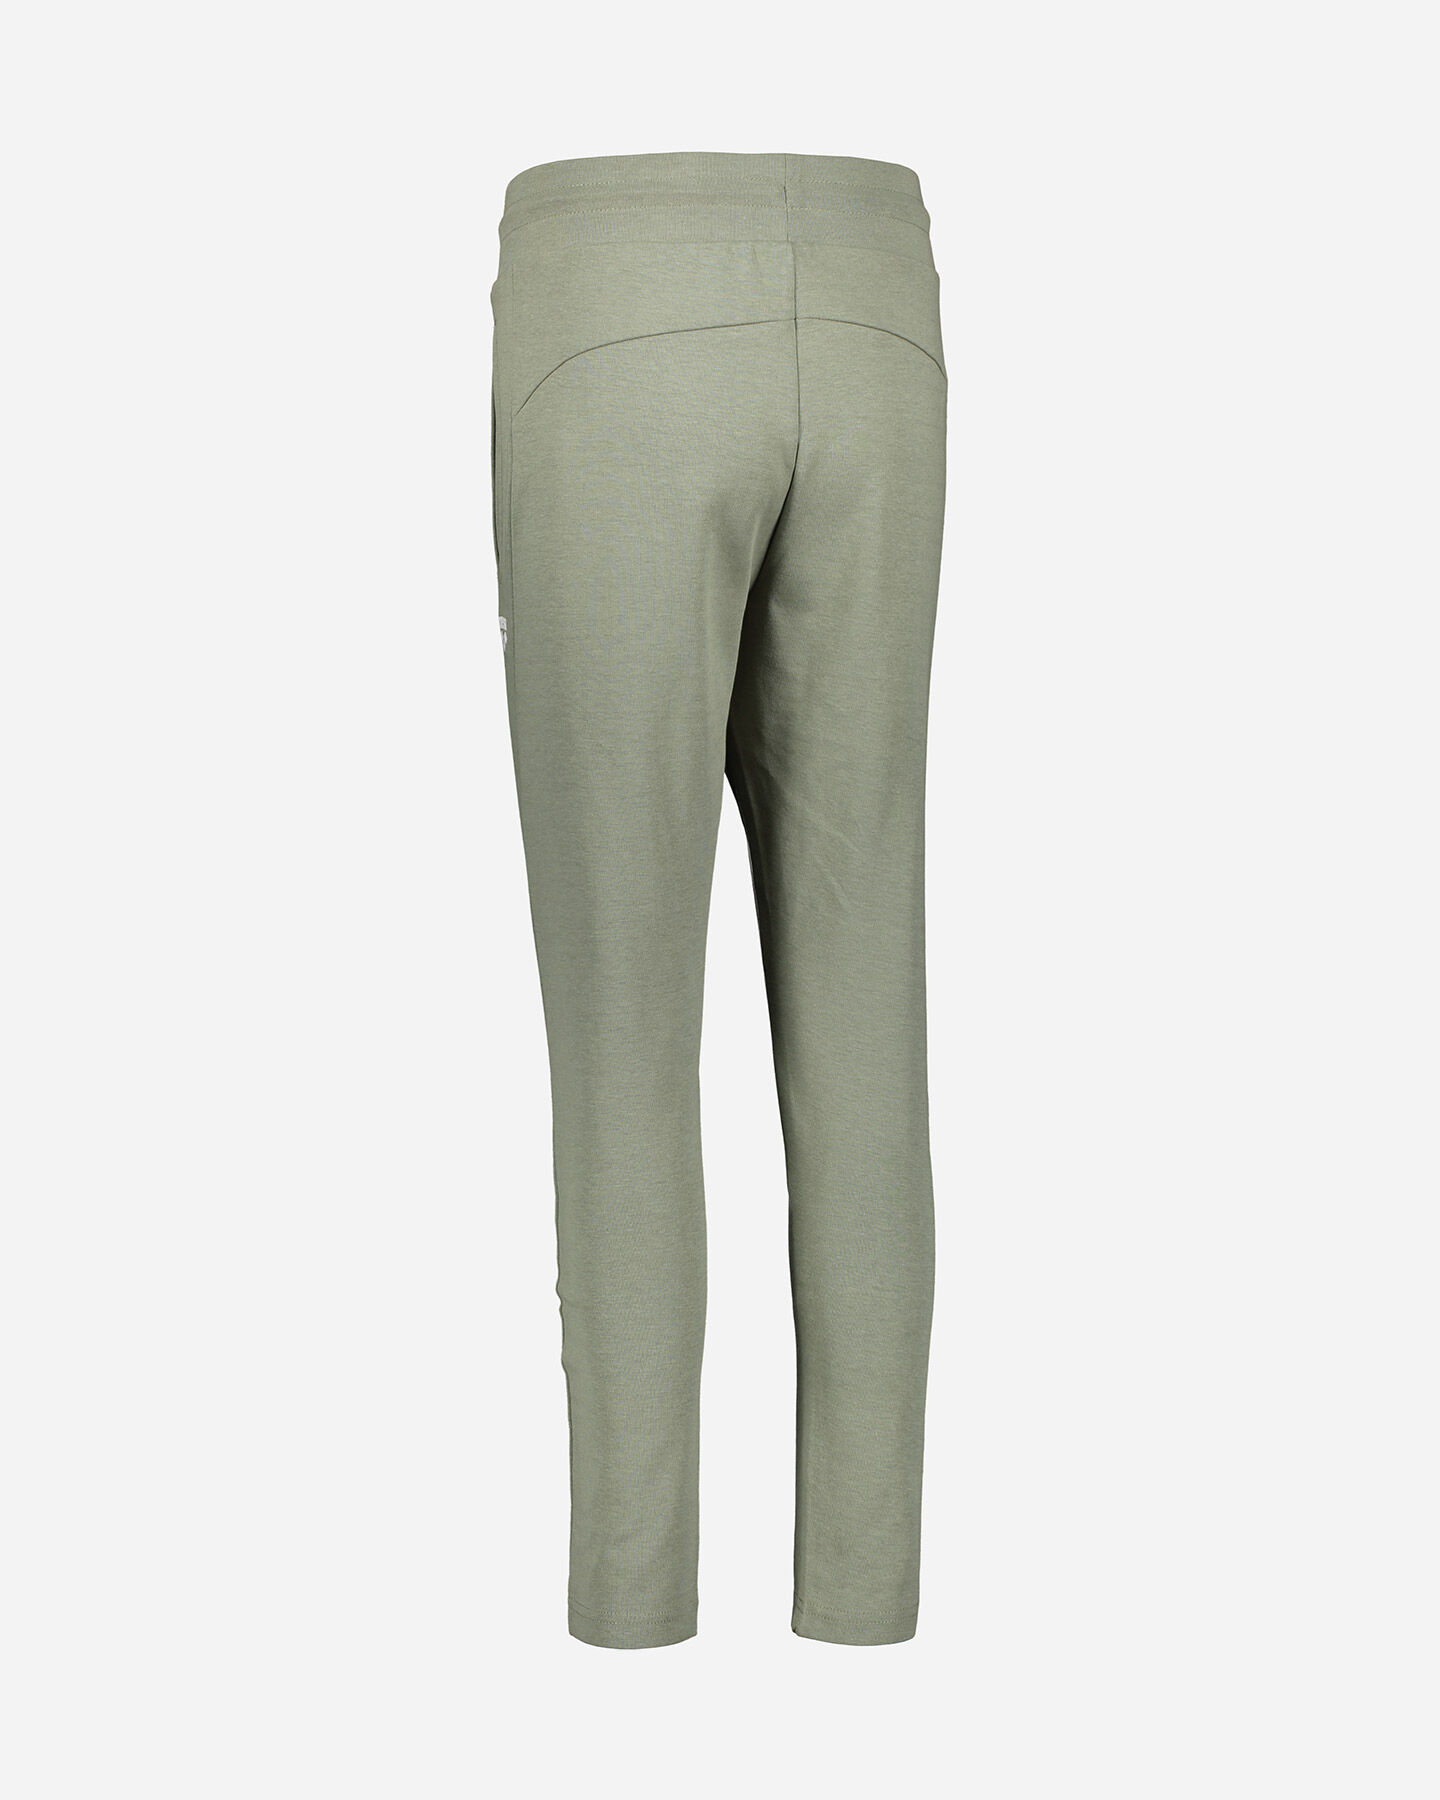  Pantalone ARENA ADVANCE W S4075040|685|XS scatto 2